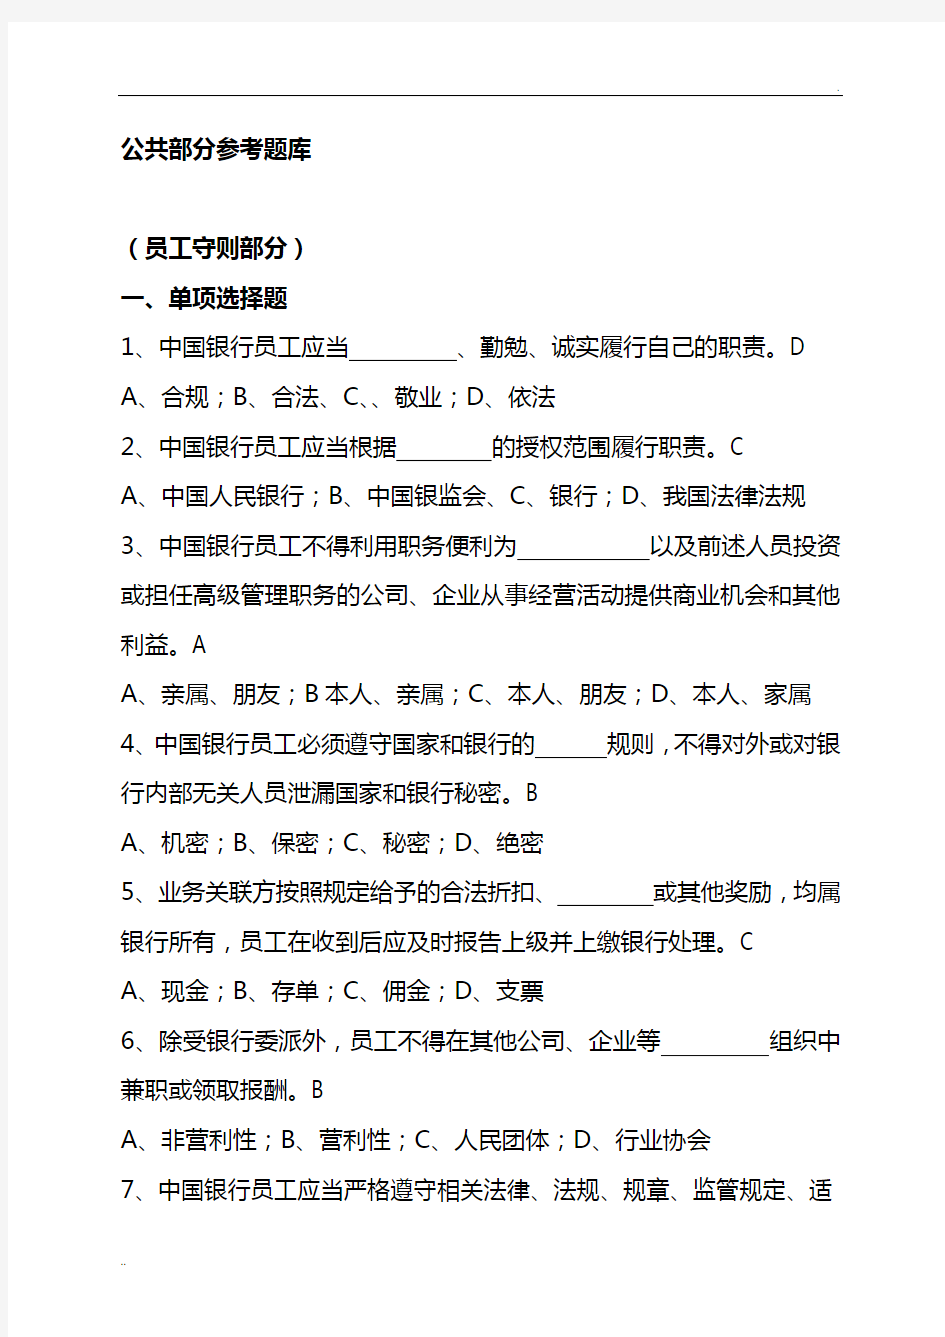 中国银行公共部分考试题库